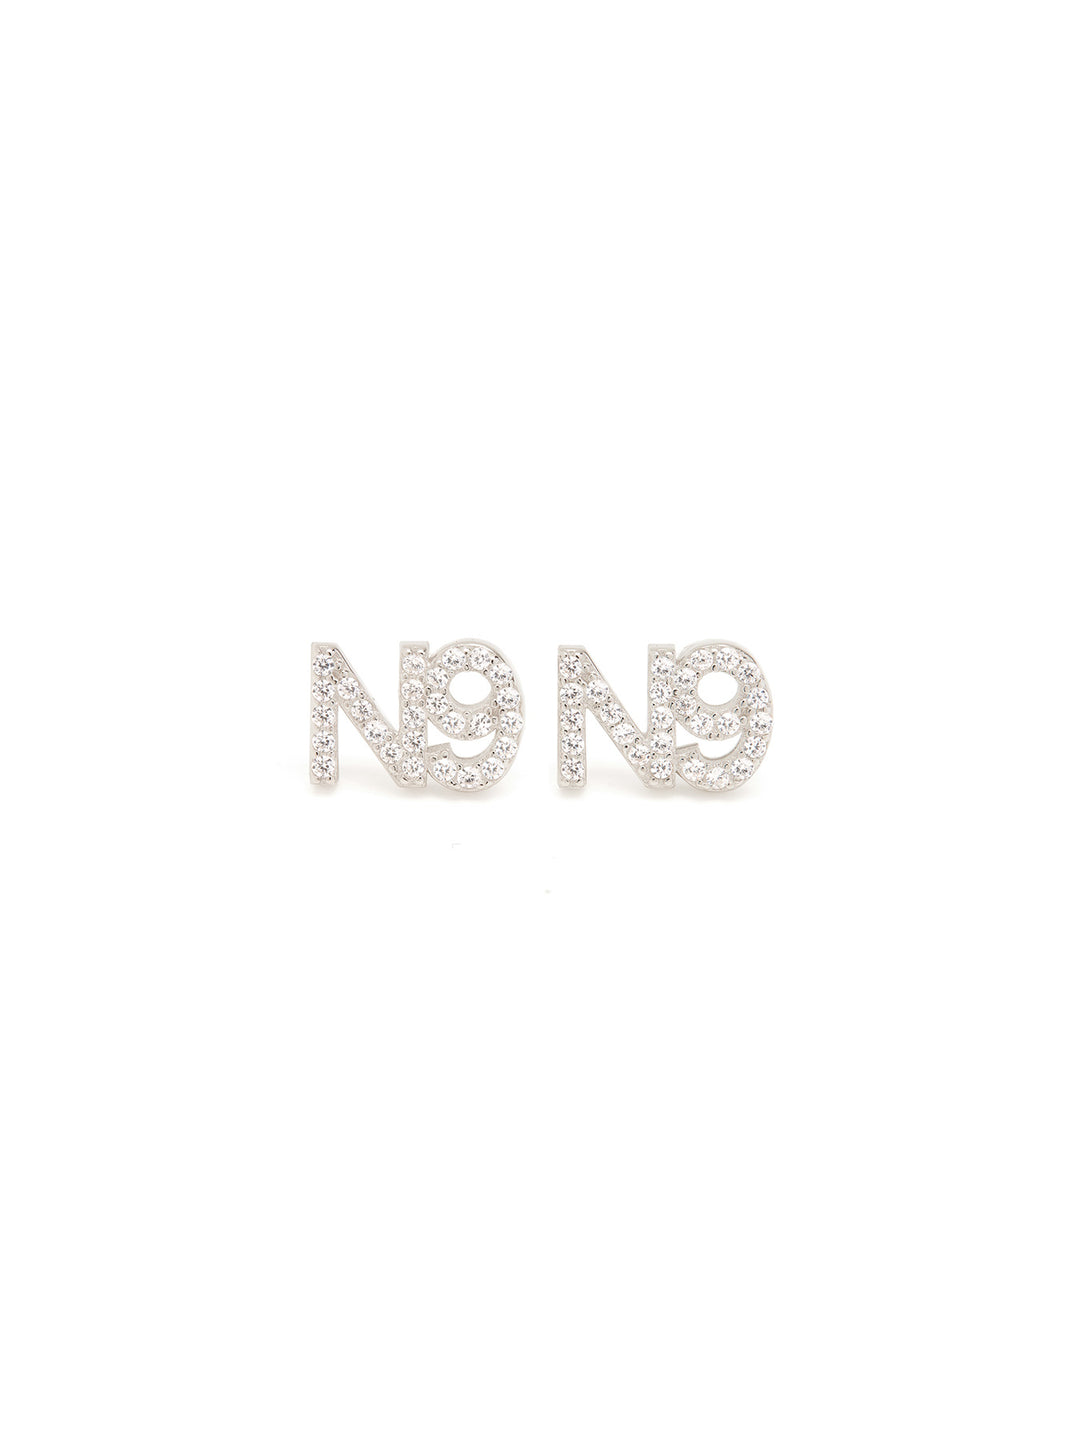 N9 - Earrings • Color: White Gold